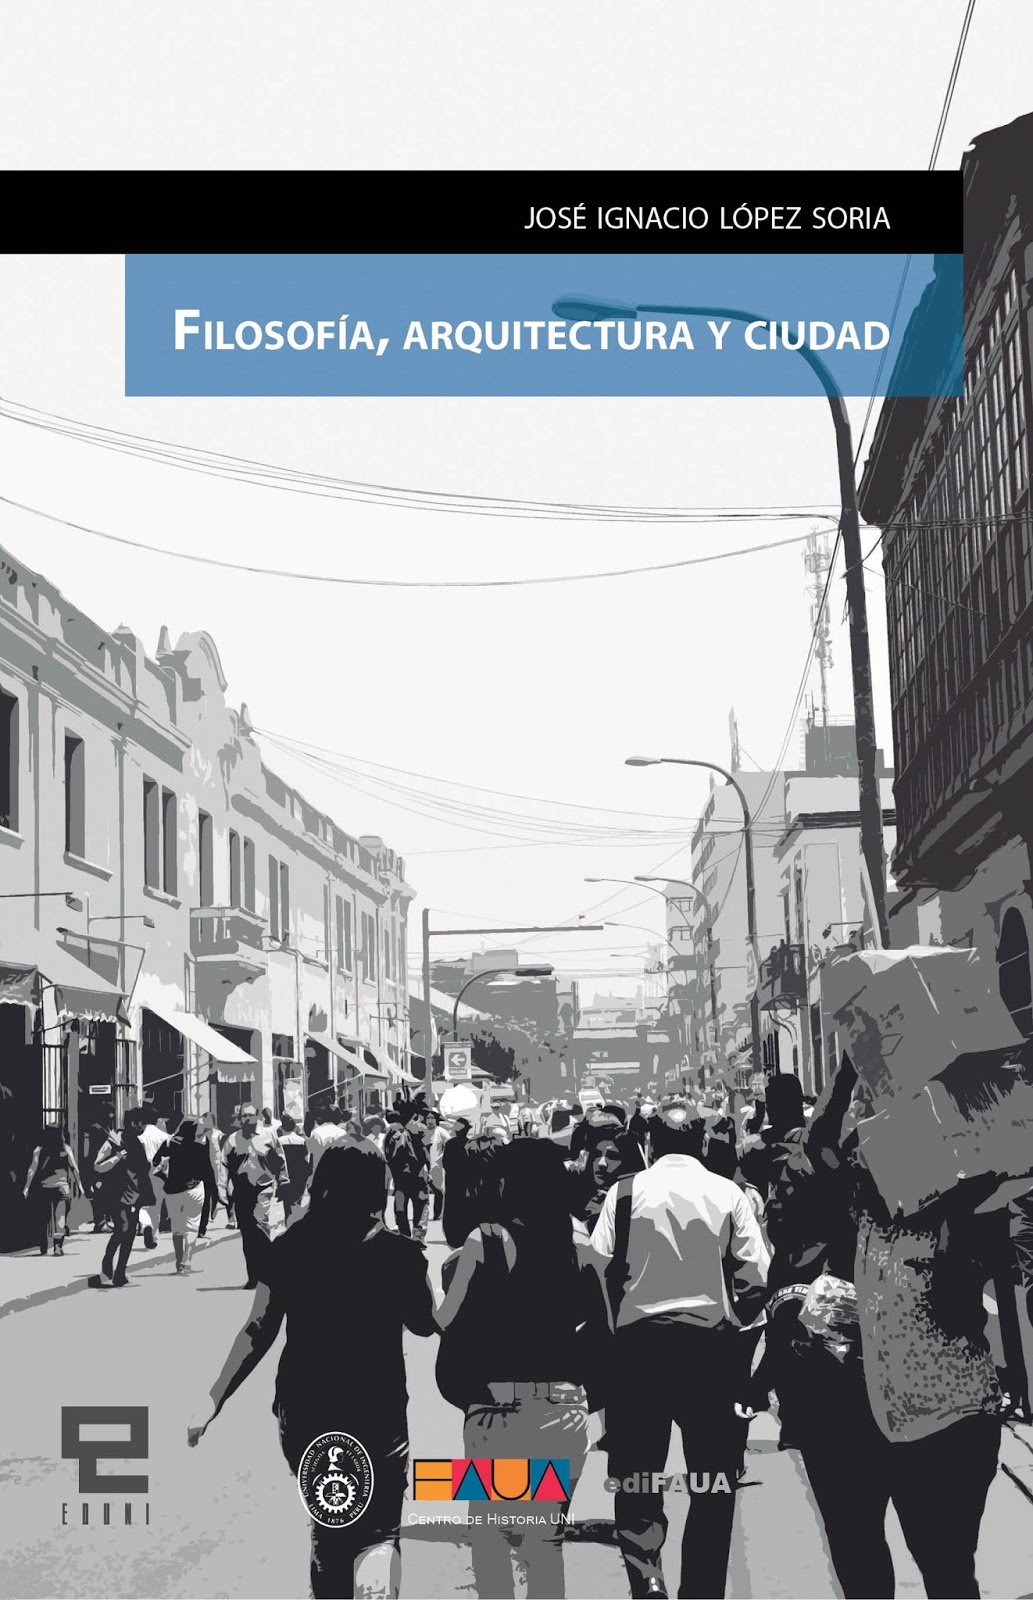 EDUNI y FAUA presentan libro “Filosofía, Arquitectura y Ciudad” del reconocido historiador José Ignacio López Soria